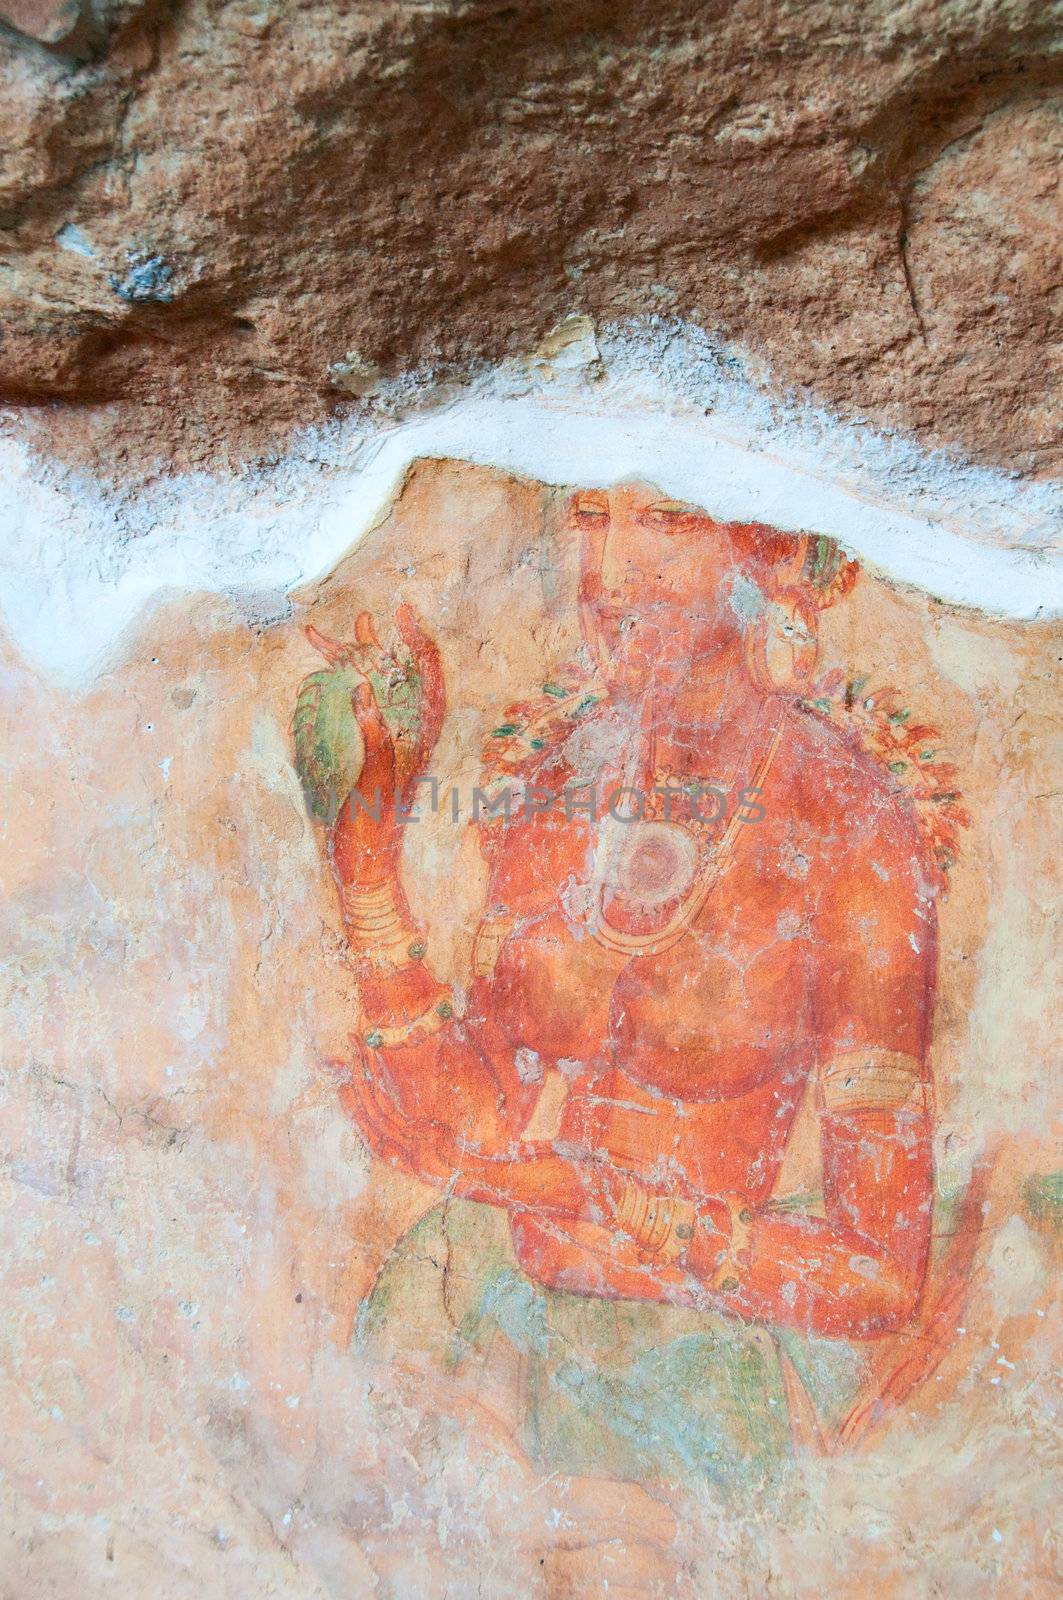 Ancient famous wall paintings (frescoes) at Sigirya, Sri Lanka.